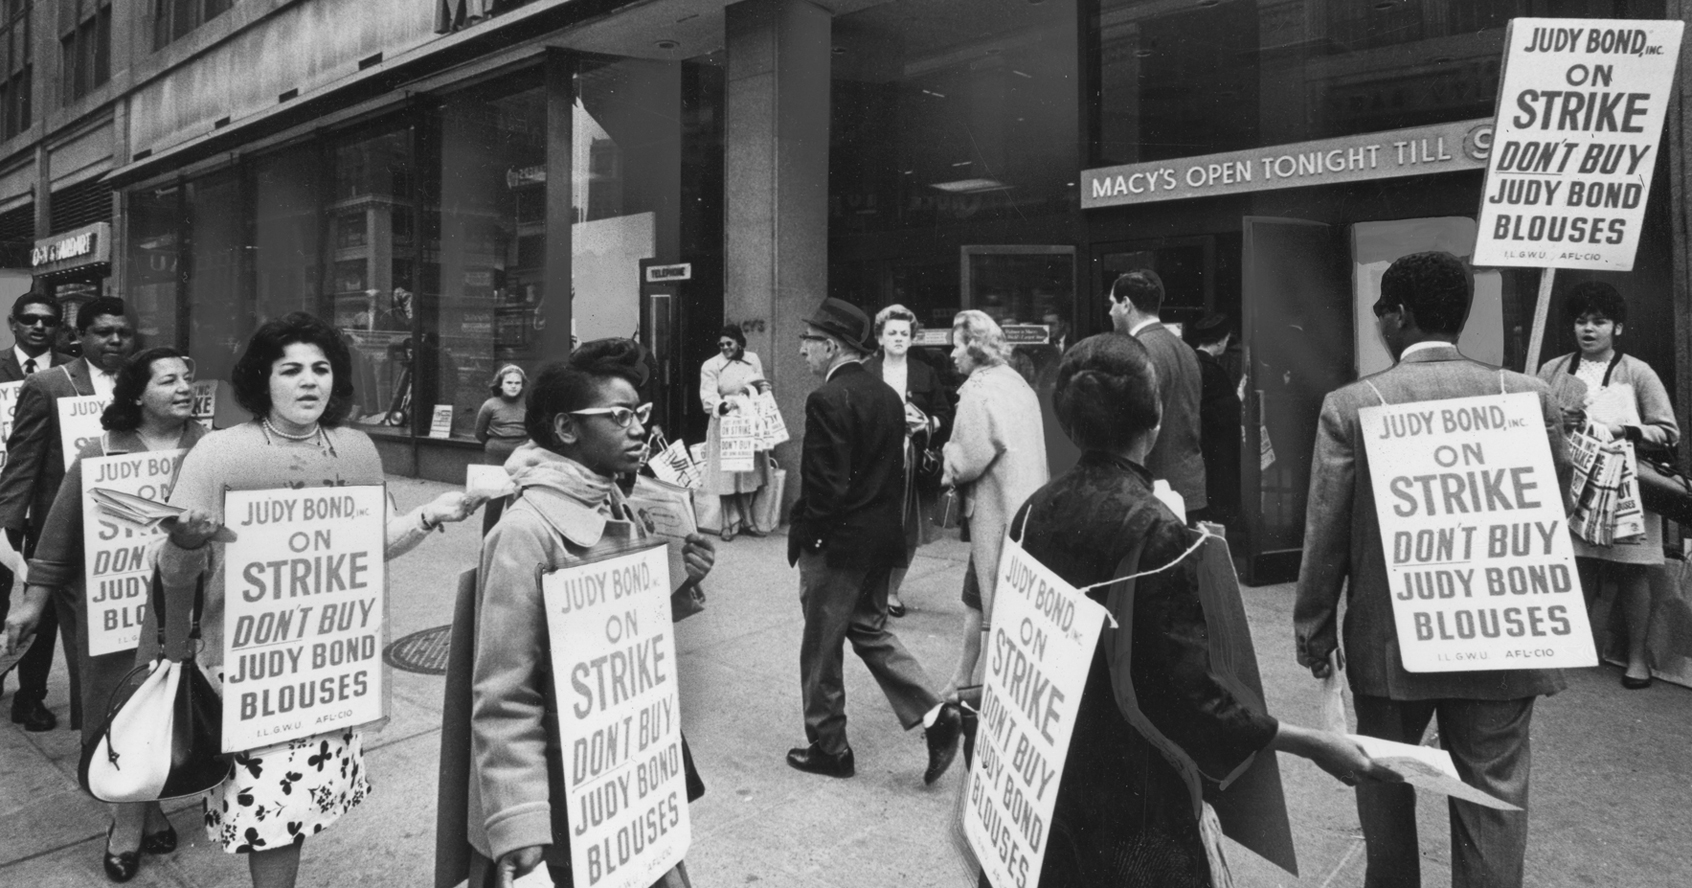 Um grupo de trabalhadores em greve marcham do lado de fora da Macy's enquanto usam cartazes incentivando as pessoas a não comprar blusas de Judy Bond